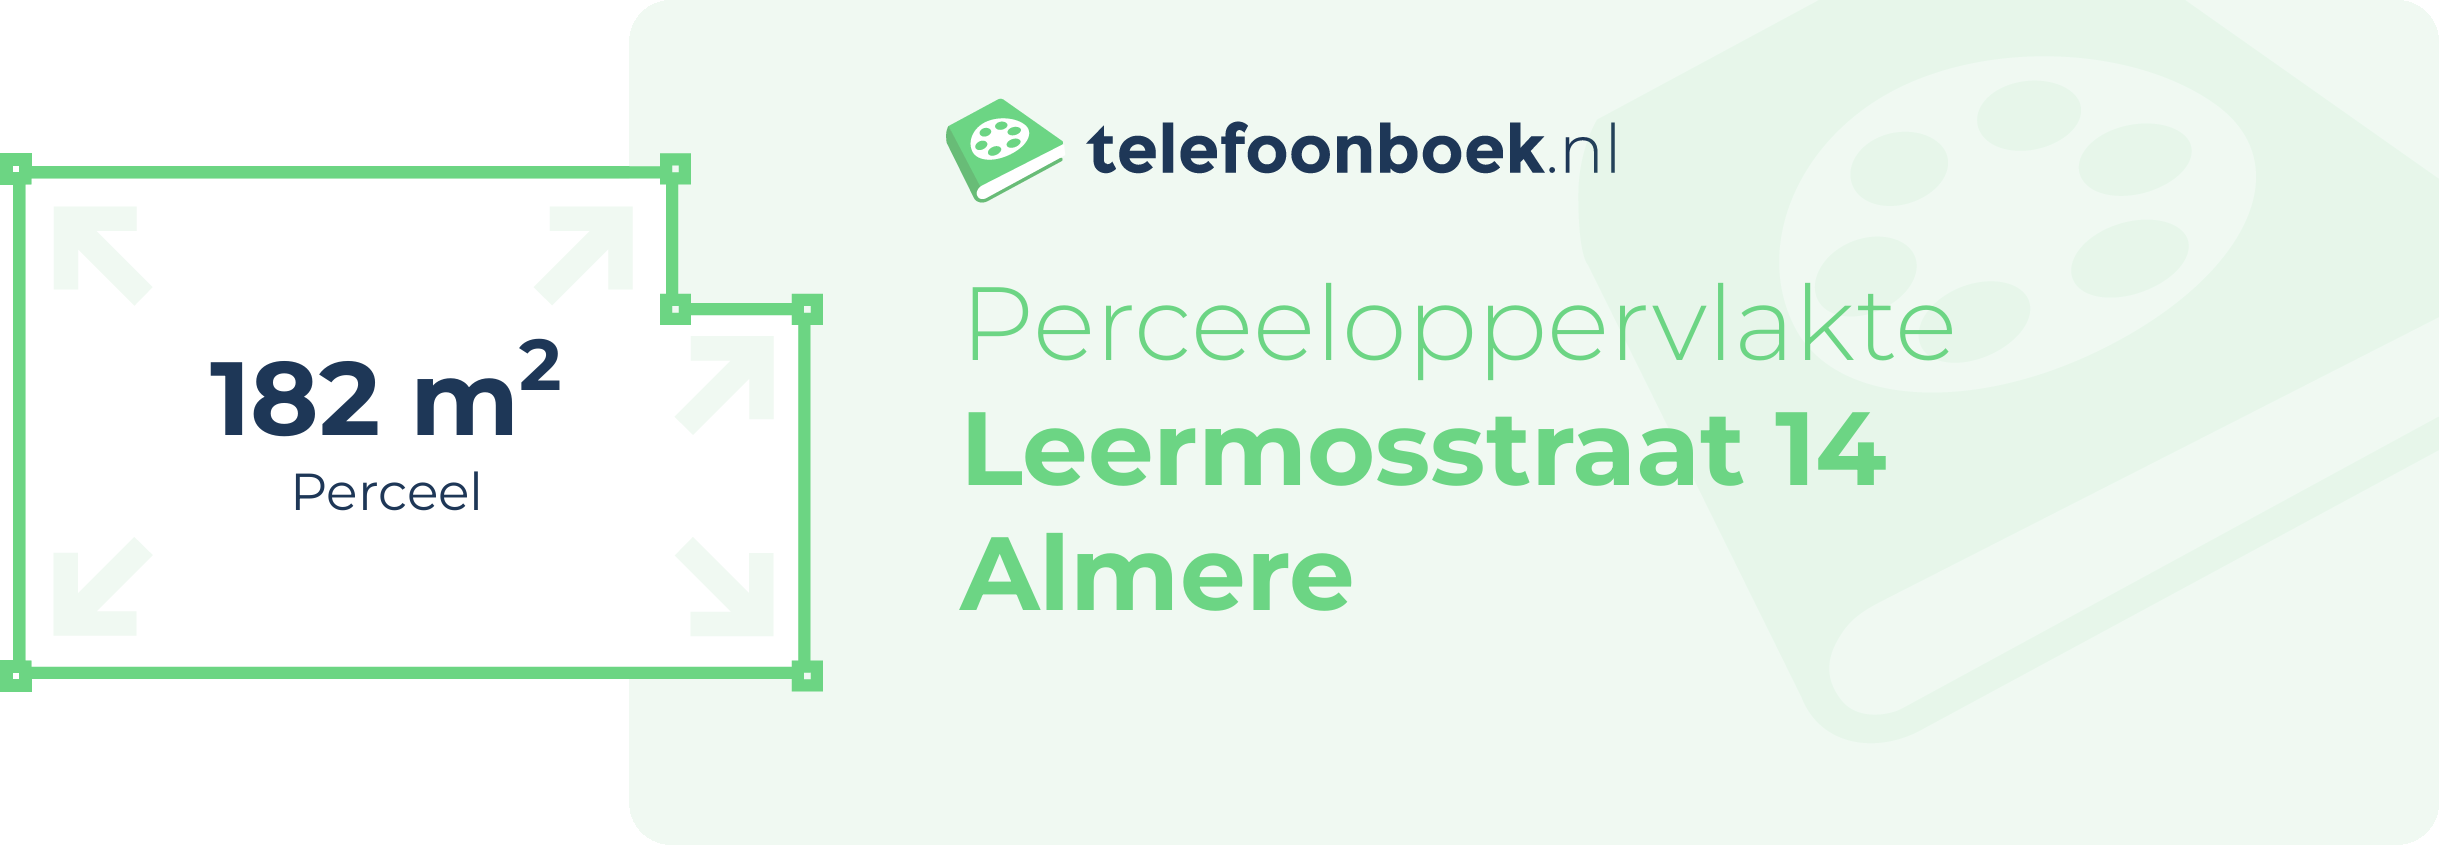 Perceeloppervlakte Leermosstraat 14 Almere